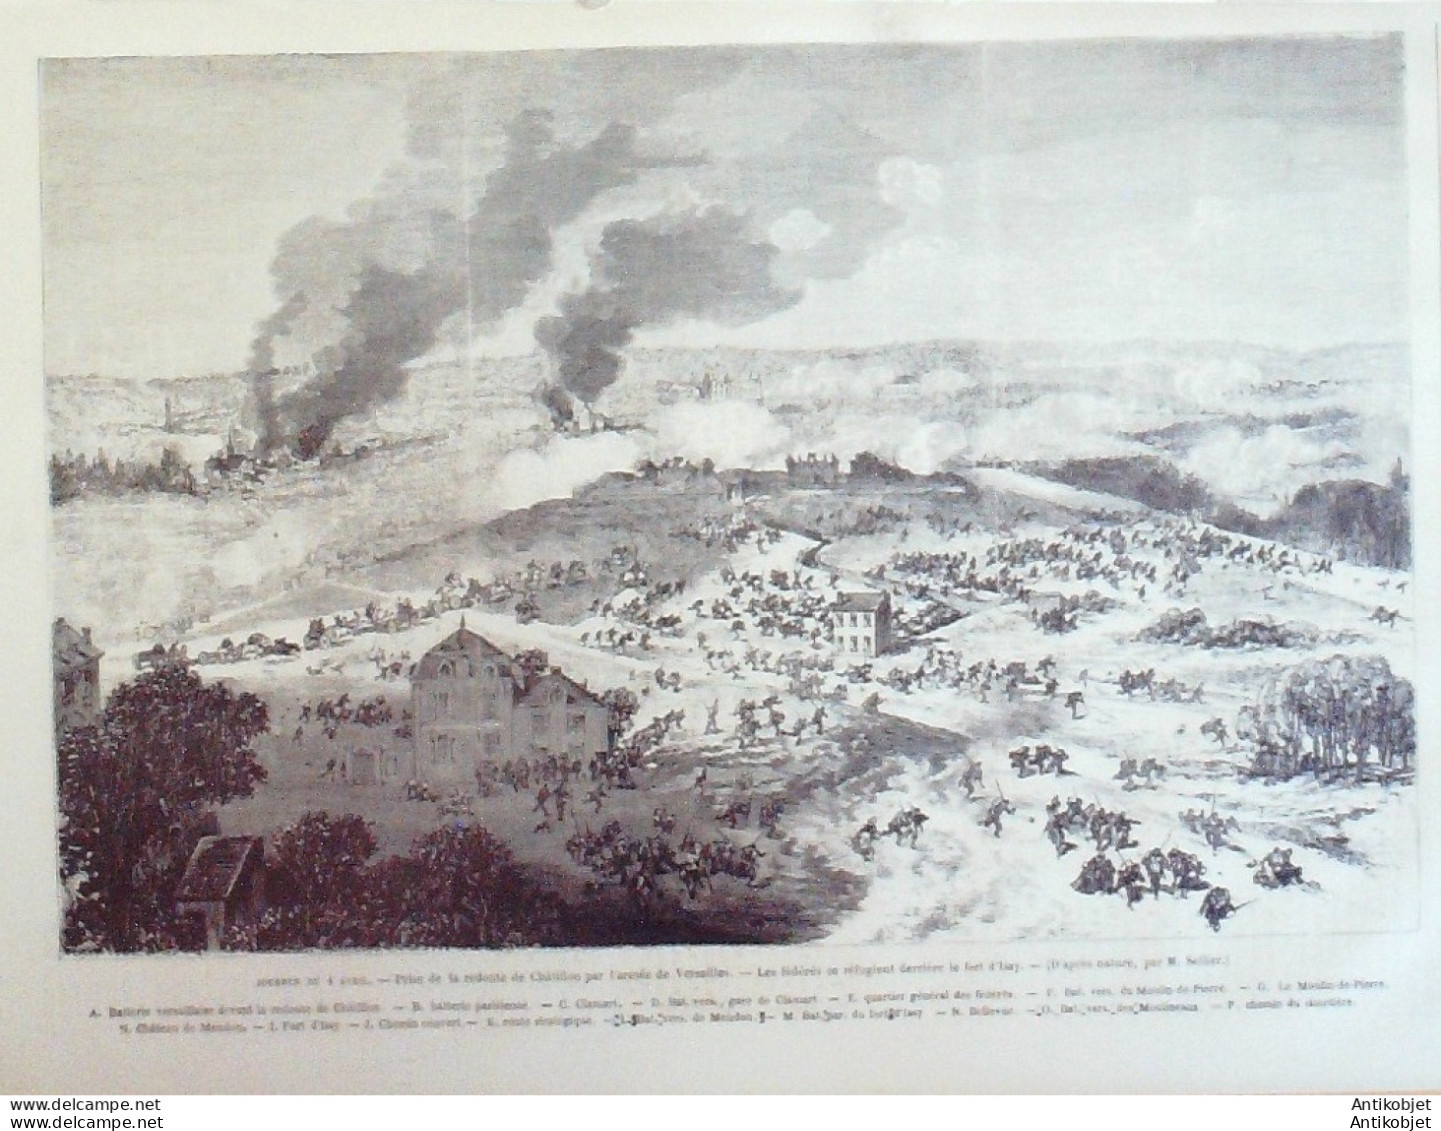 Le Monde illustré 1871 n°731 Courbevoie Meudon Chatillon (92) guerre civile la Guillotine 